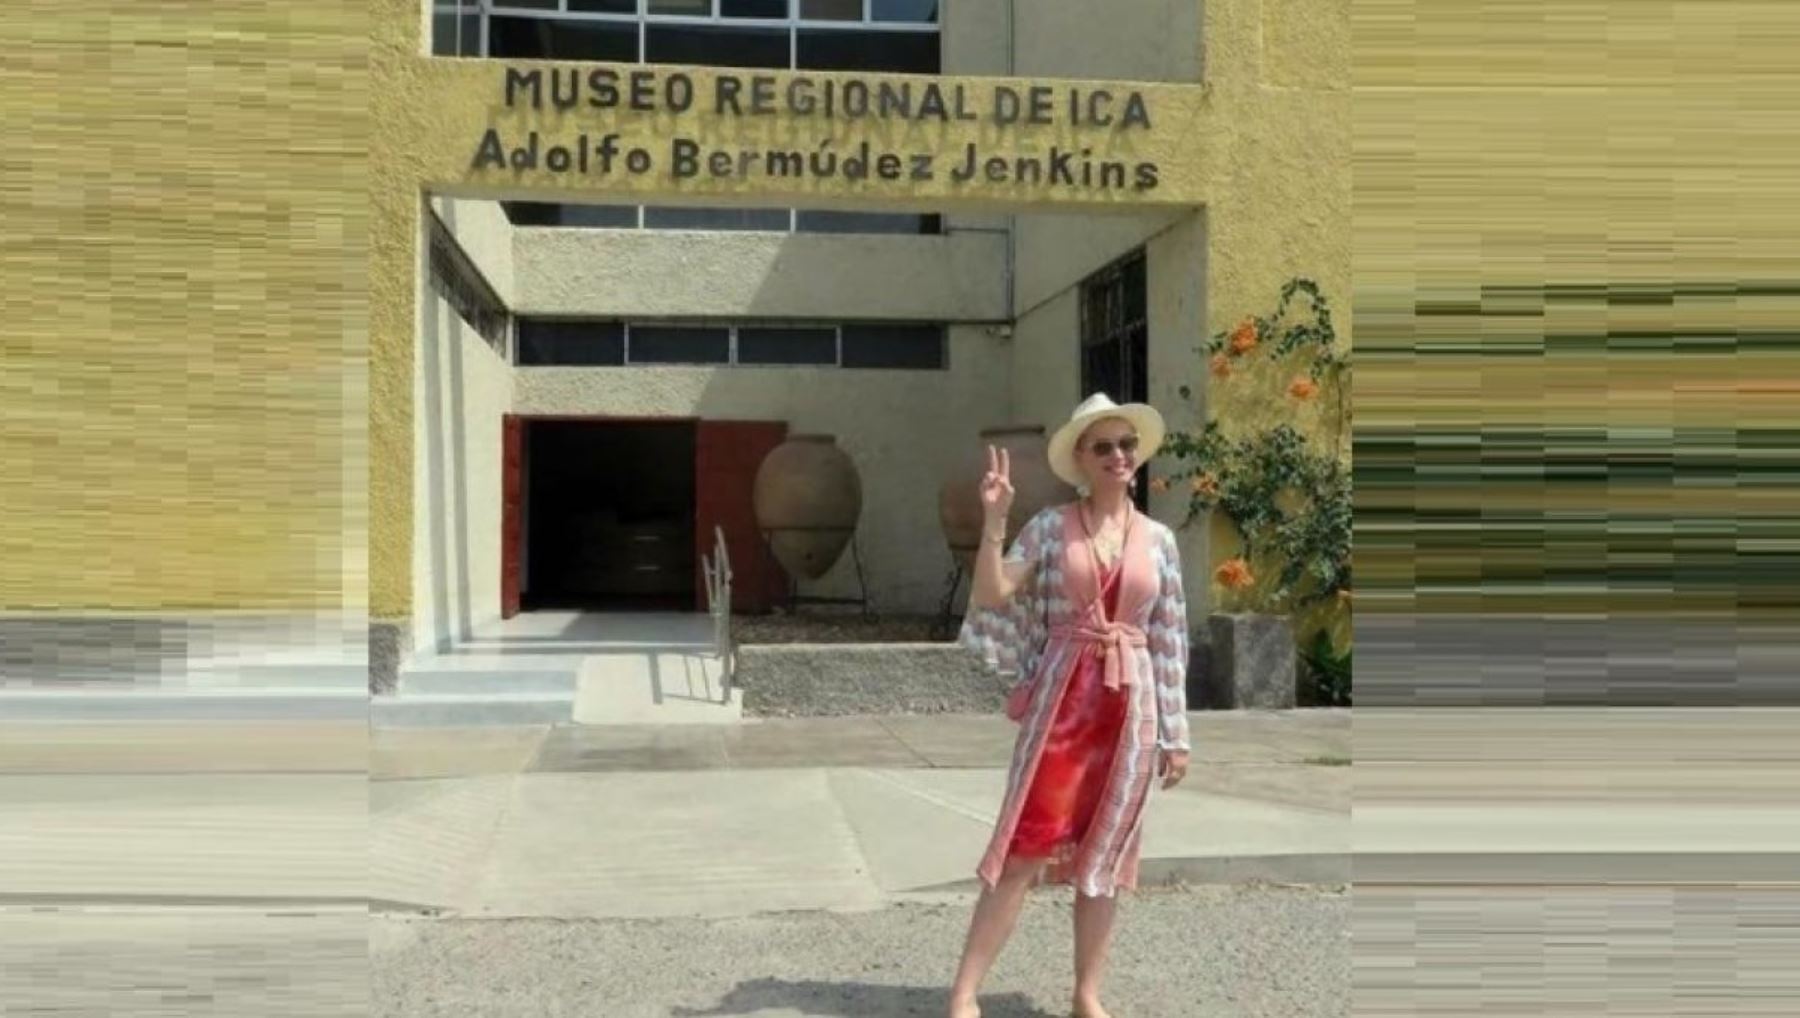 La artista se dio tiempo para visitar el museo regional de Ica y probar el pisco sour.